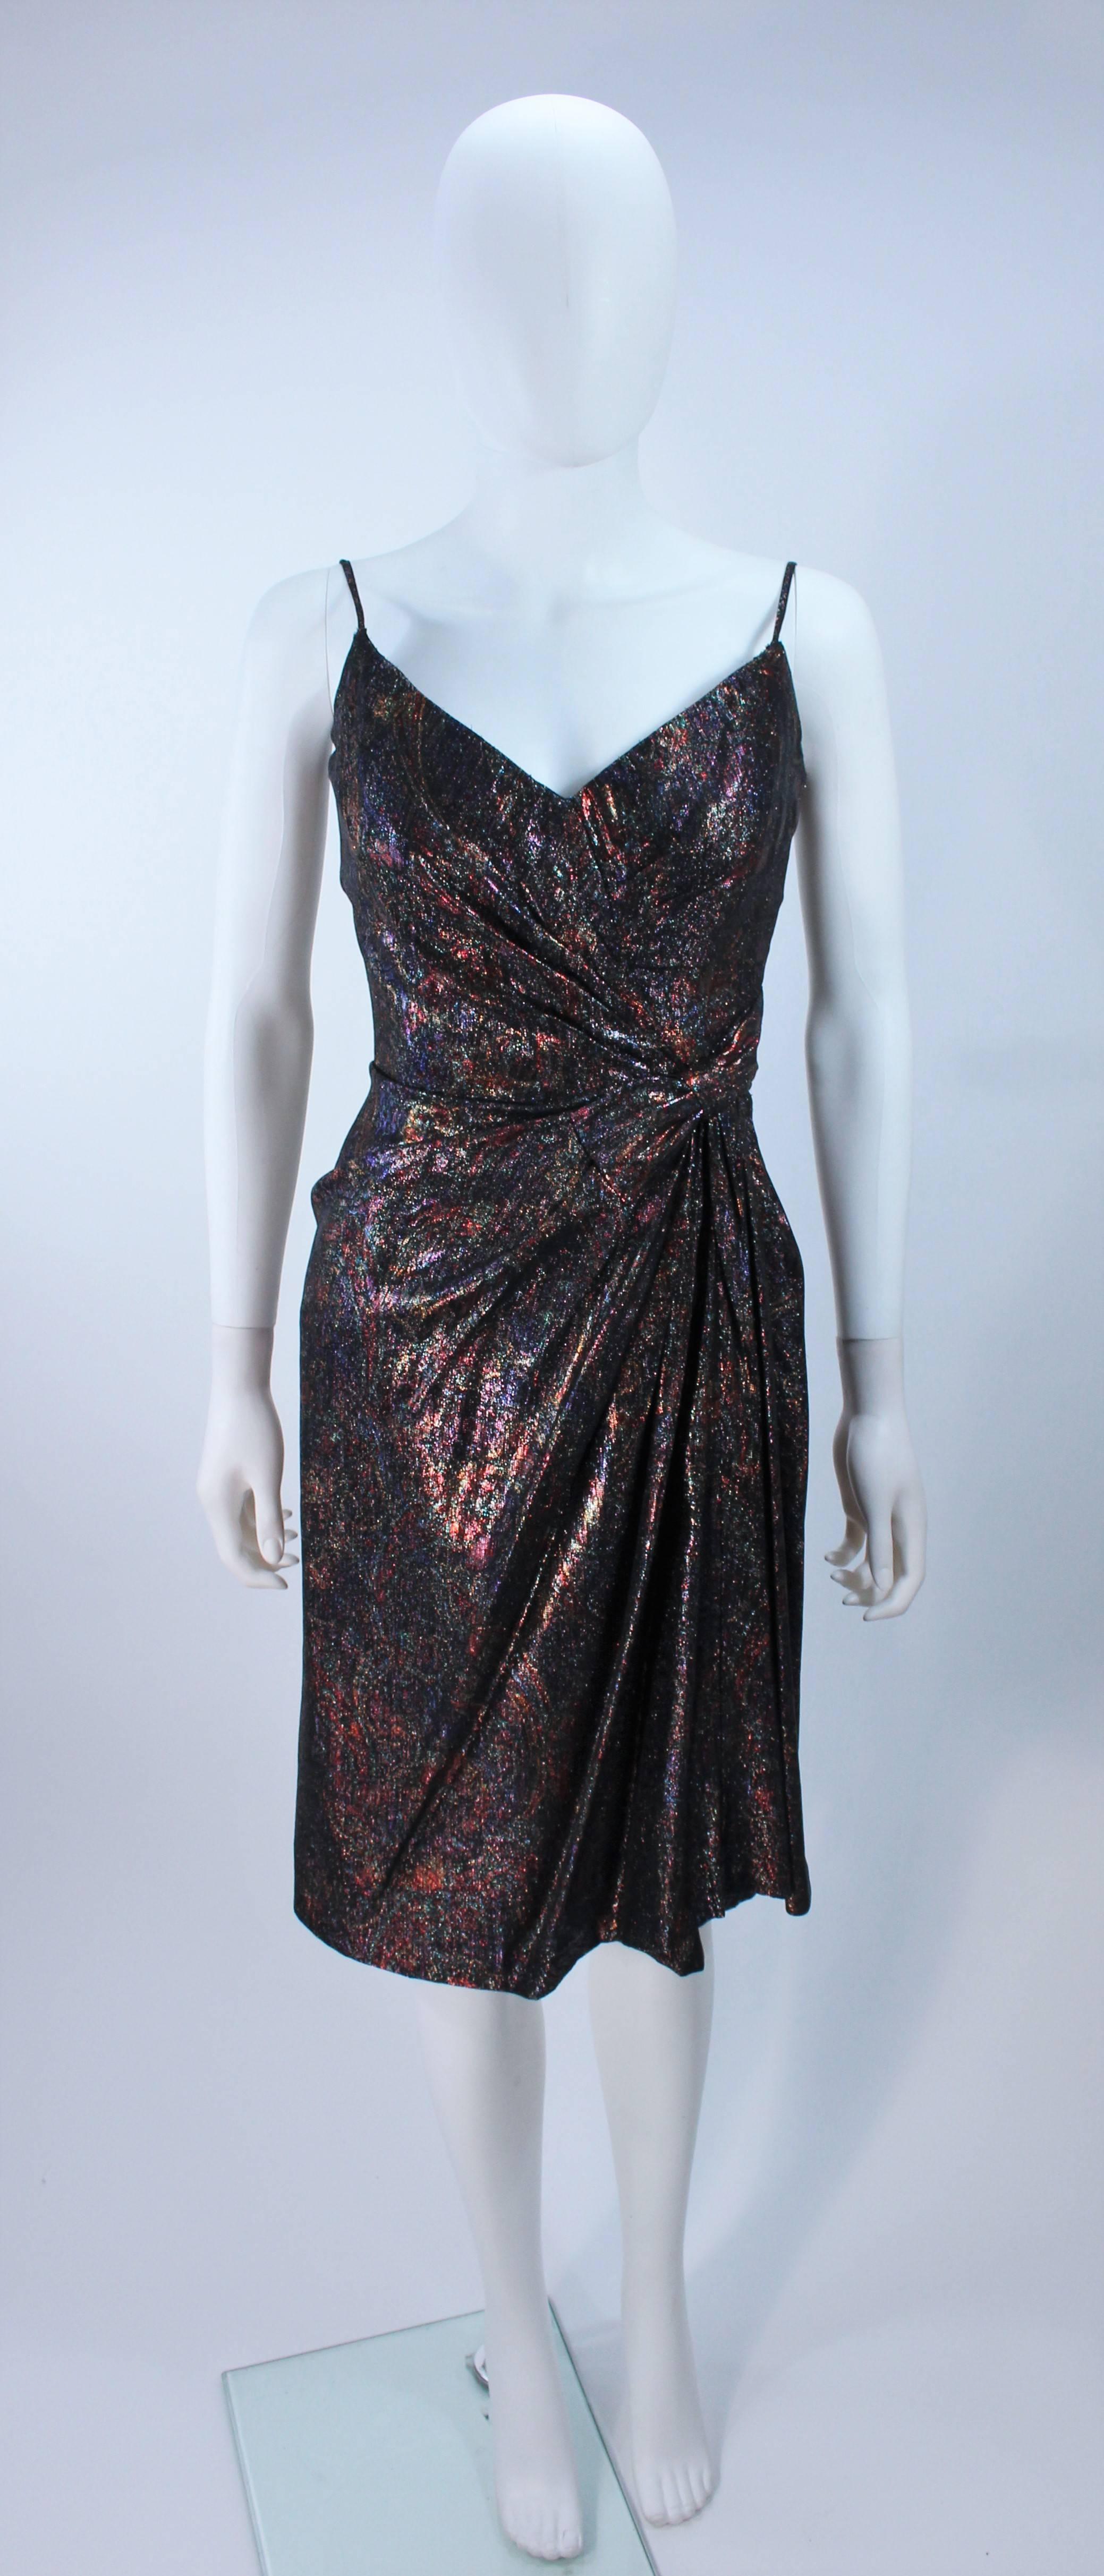  Dieses Cocktailkleid von Nolan Miller besteht aus einem metallisch schimmernden, bronze- und lilafarbenen Stoff mit Paisleymuster und einem drapierten Detail. Es gibt einen Reißverschluss in der Mitte des Rückens, der innen mit Stäbchen besetzt